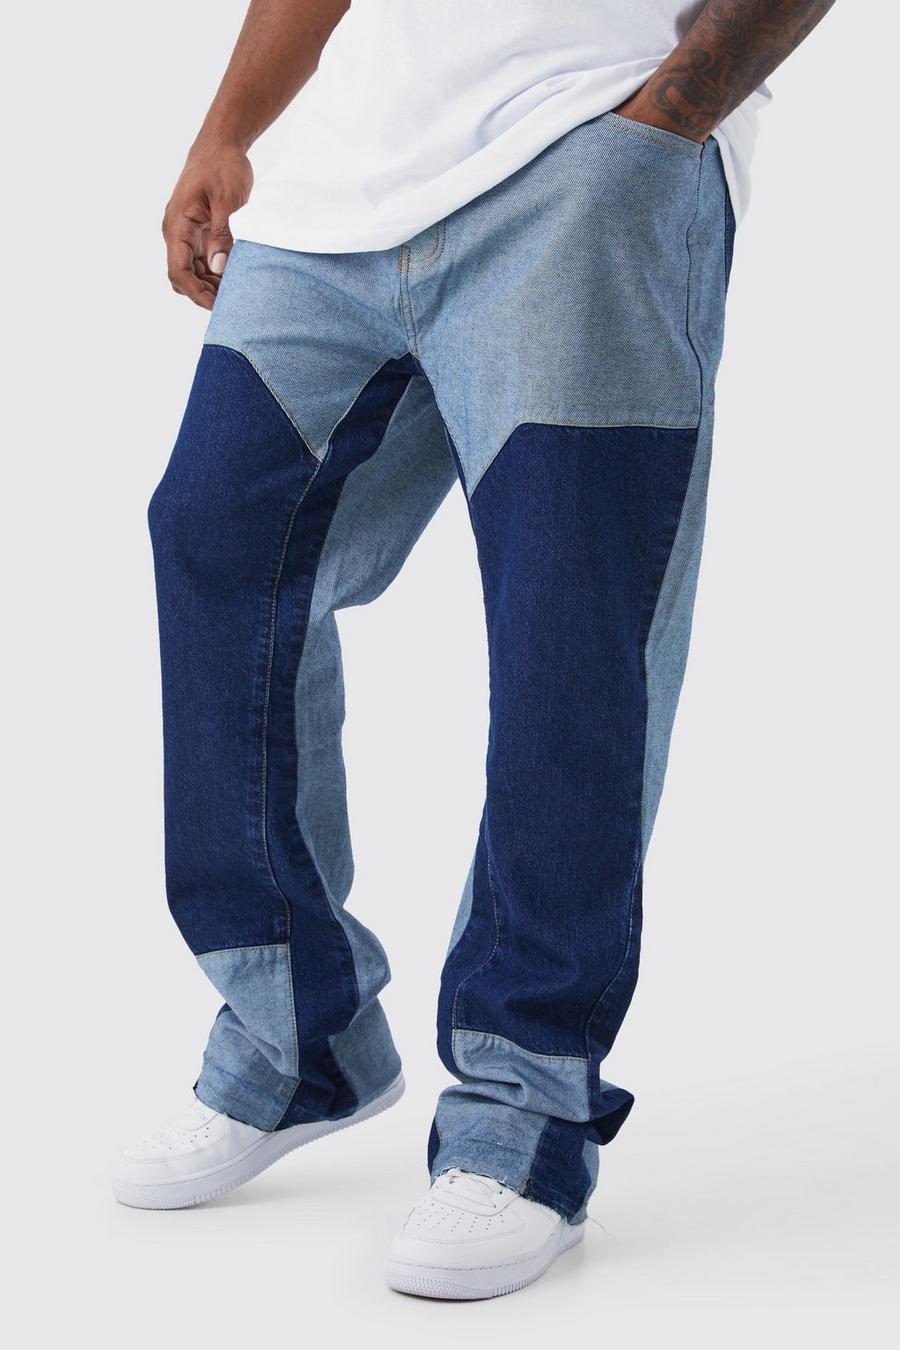 Jeans a zampa Plus Size Slim Fit in denim rigido colorato stile Carpenter, Vintage blue